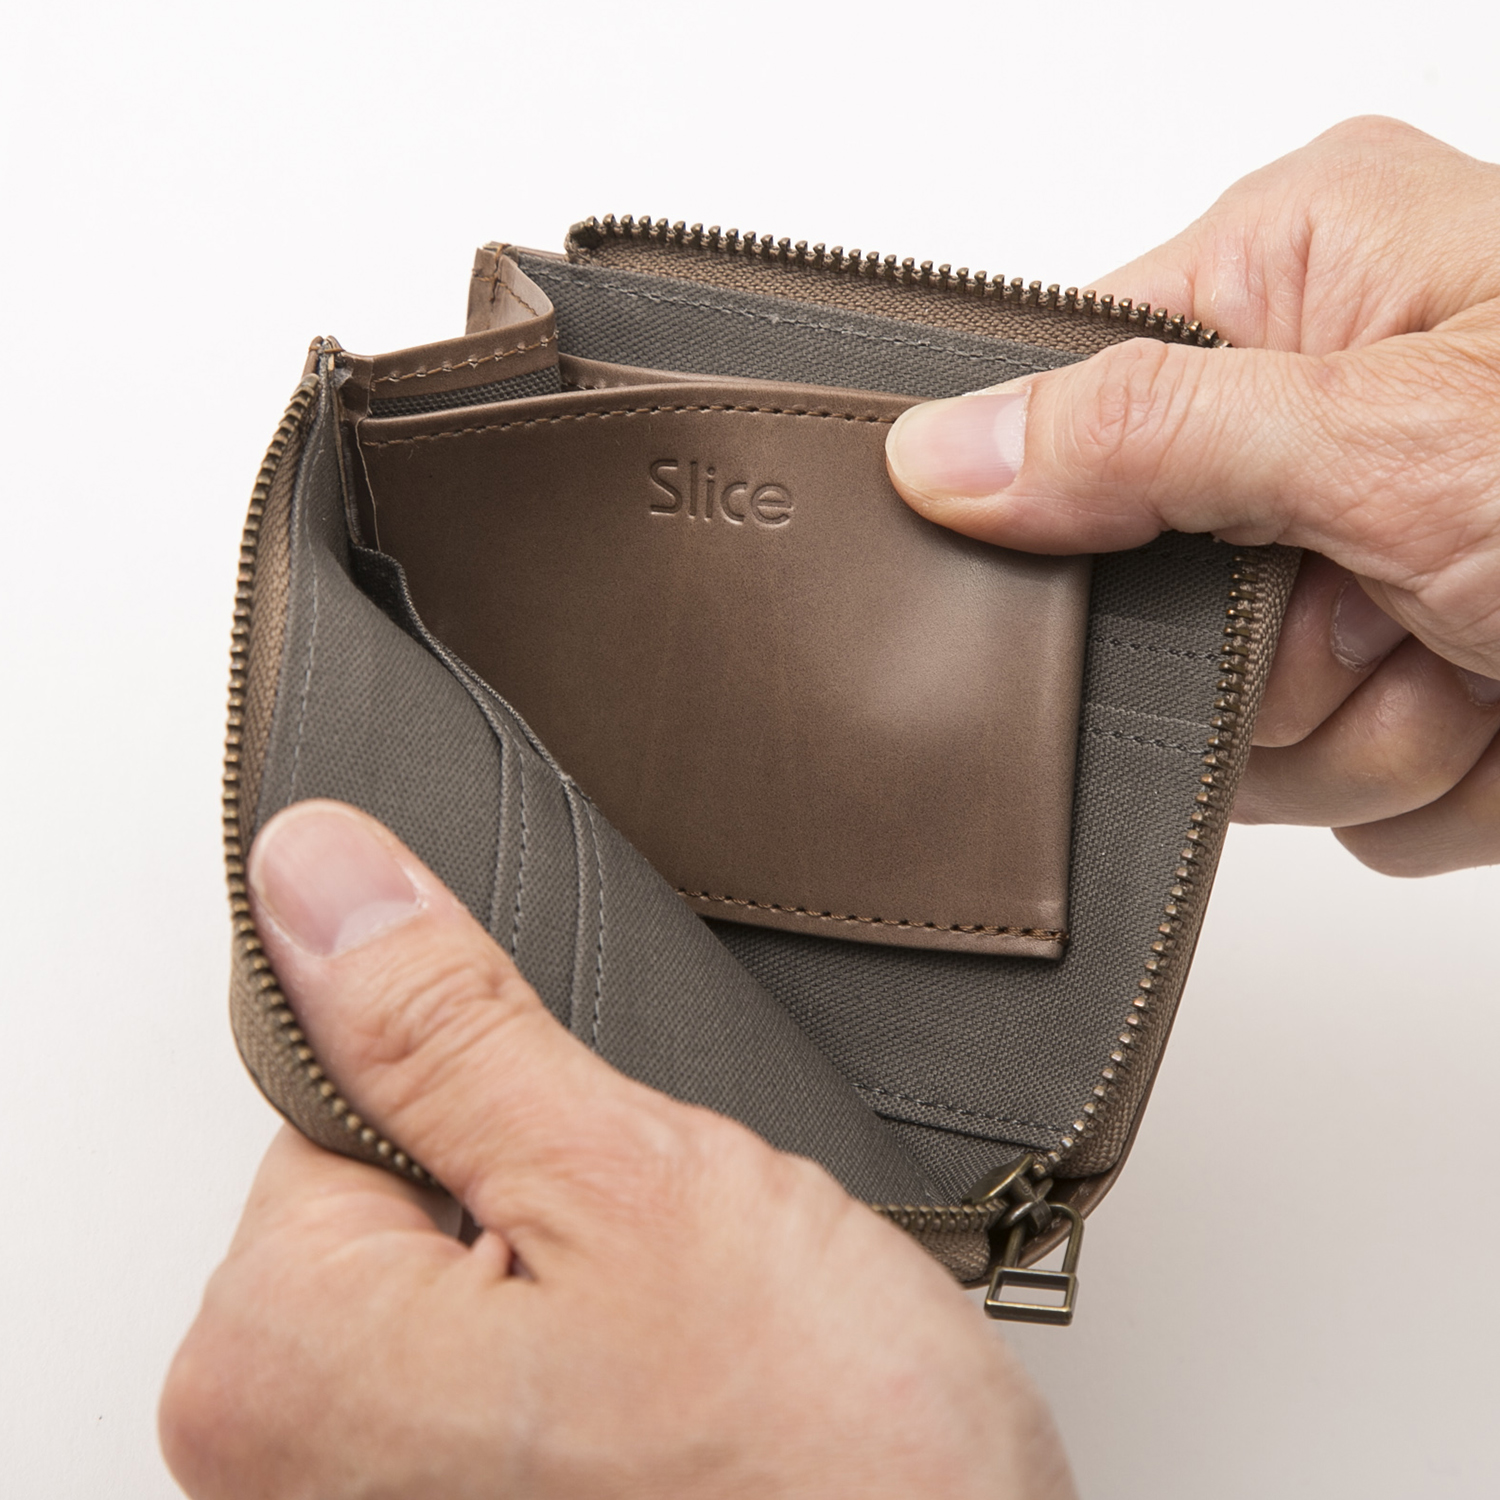 Slice/鍵ポケットつきコンパクト財布 カーフ